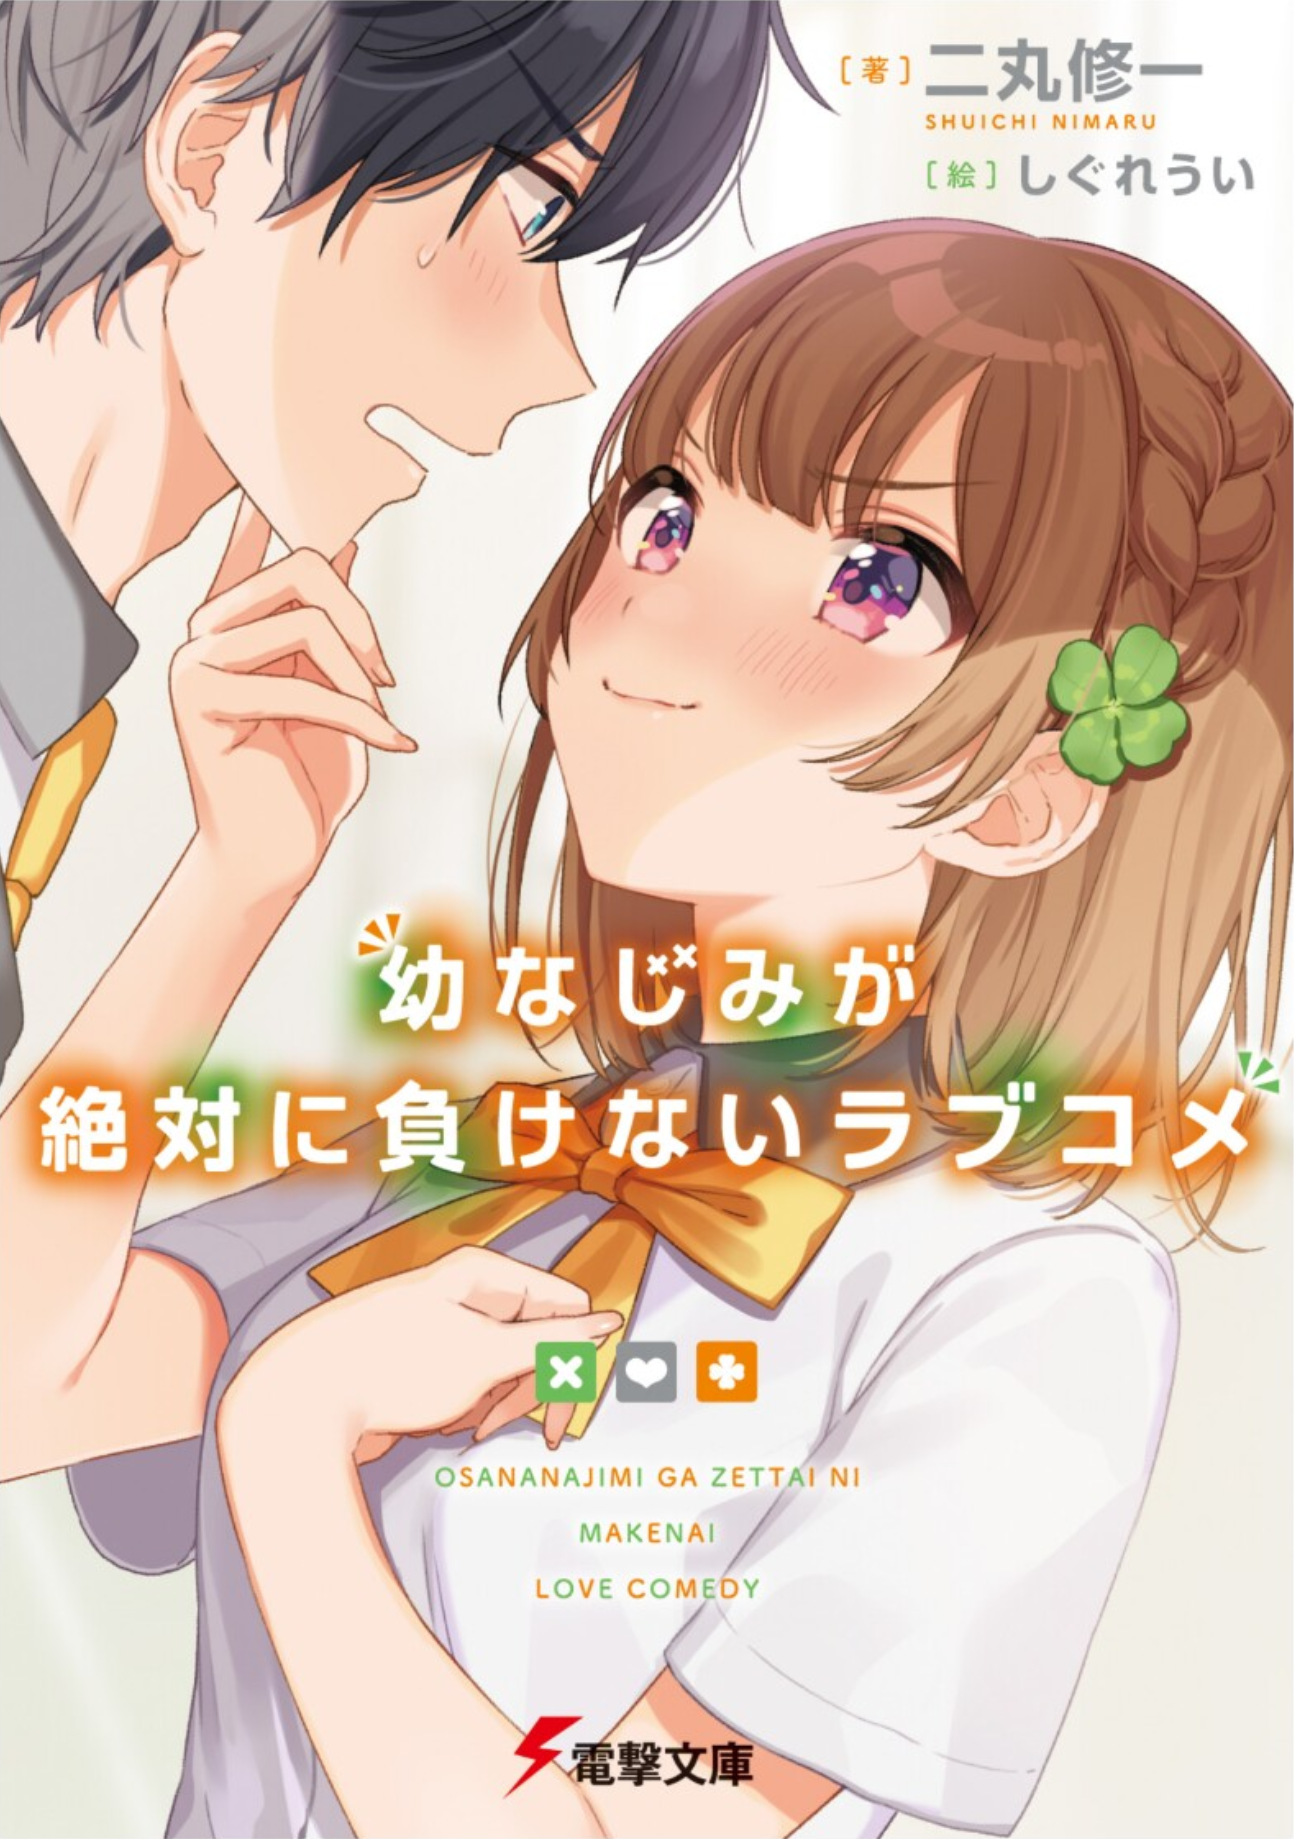 1-2 // ｏｍａｋｅ, Sugar Cookie I 甘い I (Haikyuu Various X Reader)